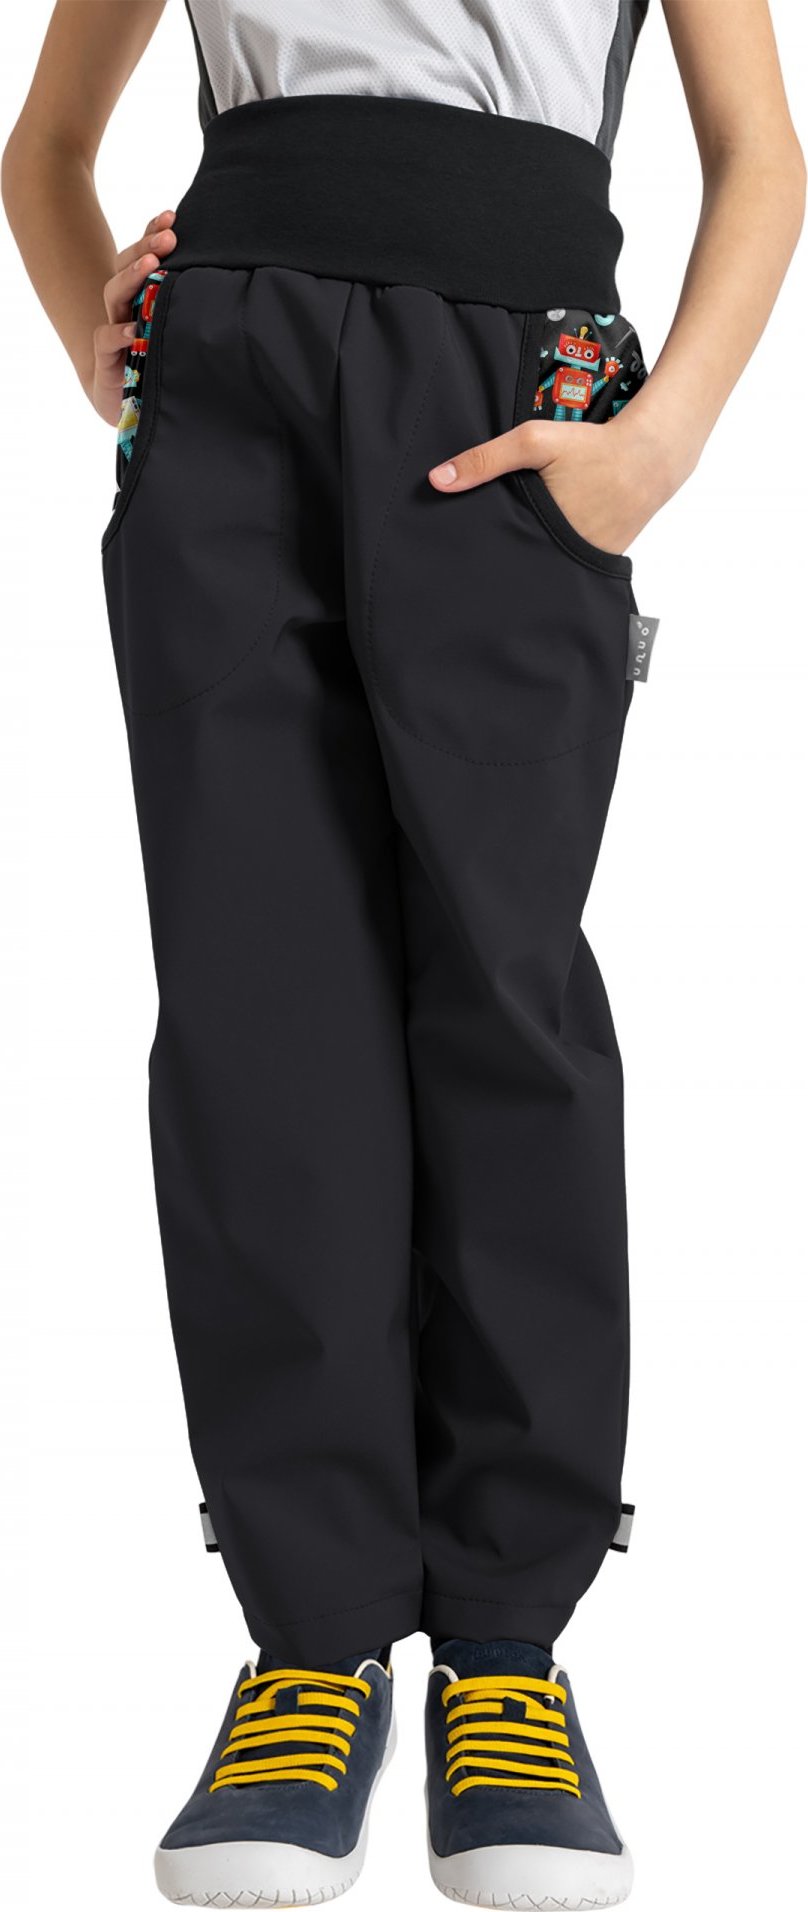 Dětské softshellové kalhoty UNUO Basic s fleecem, černé, Roboti Velikost: 116/122